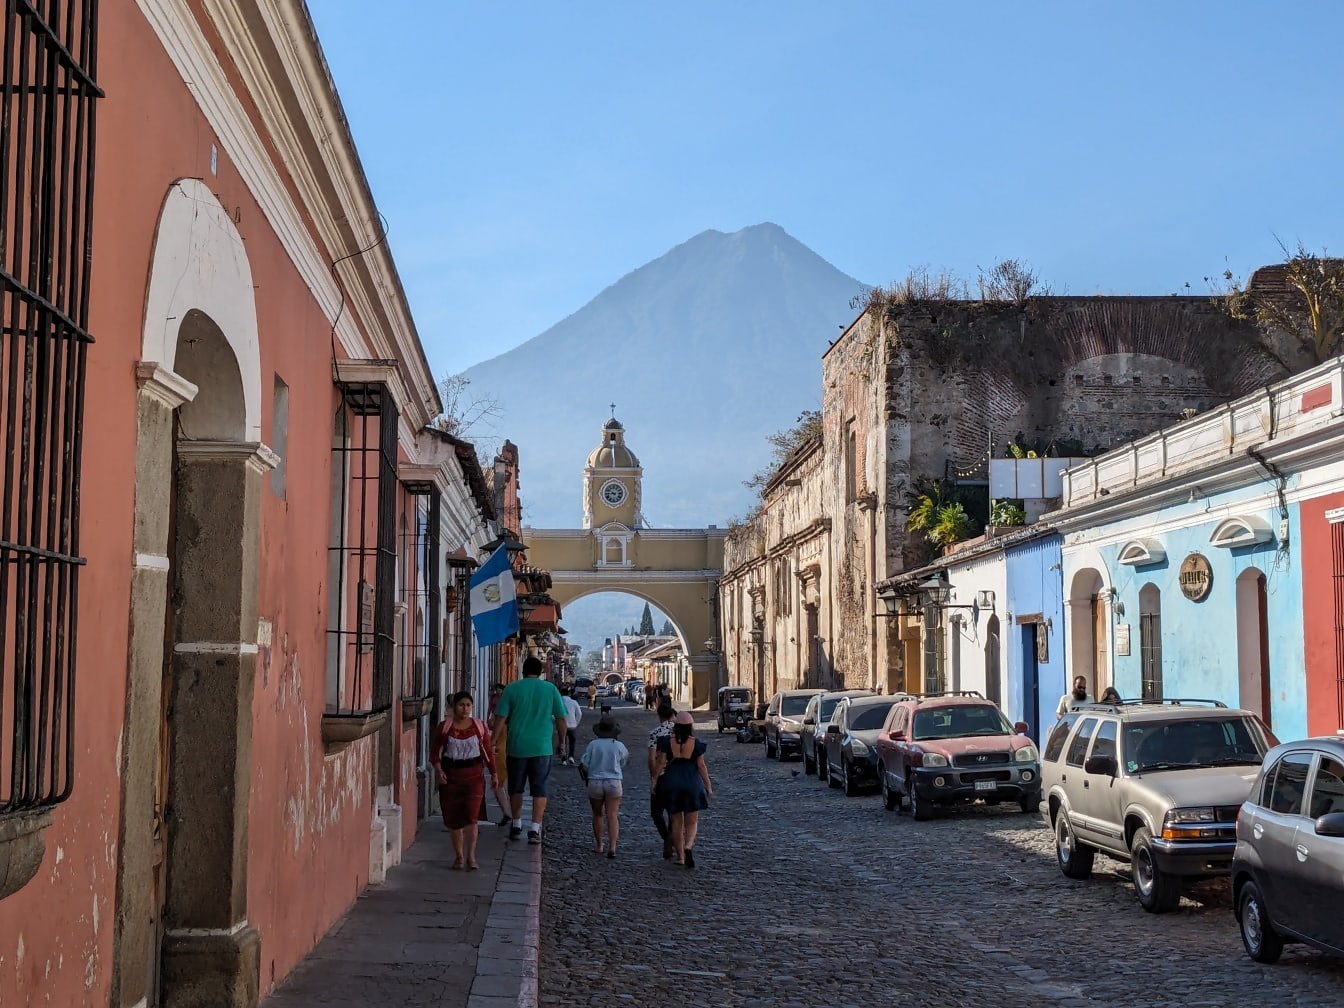 Personas caminando por una calle empedrada en la parte vieja de la ciudad en Guatemala